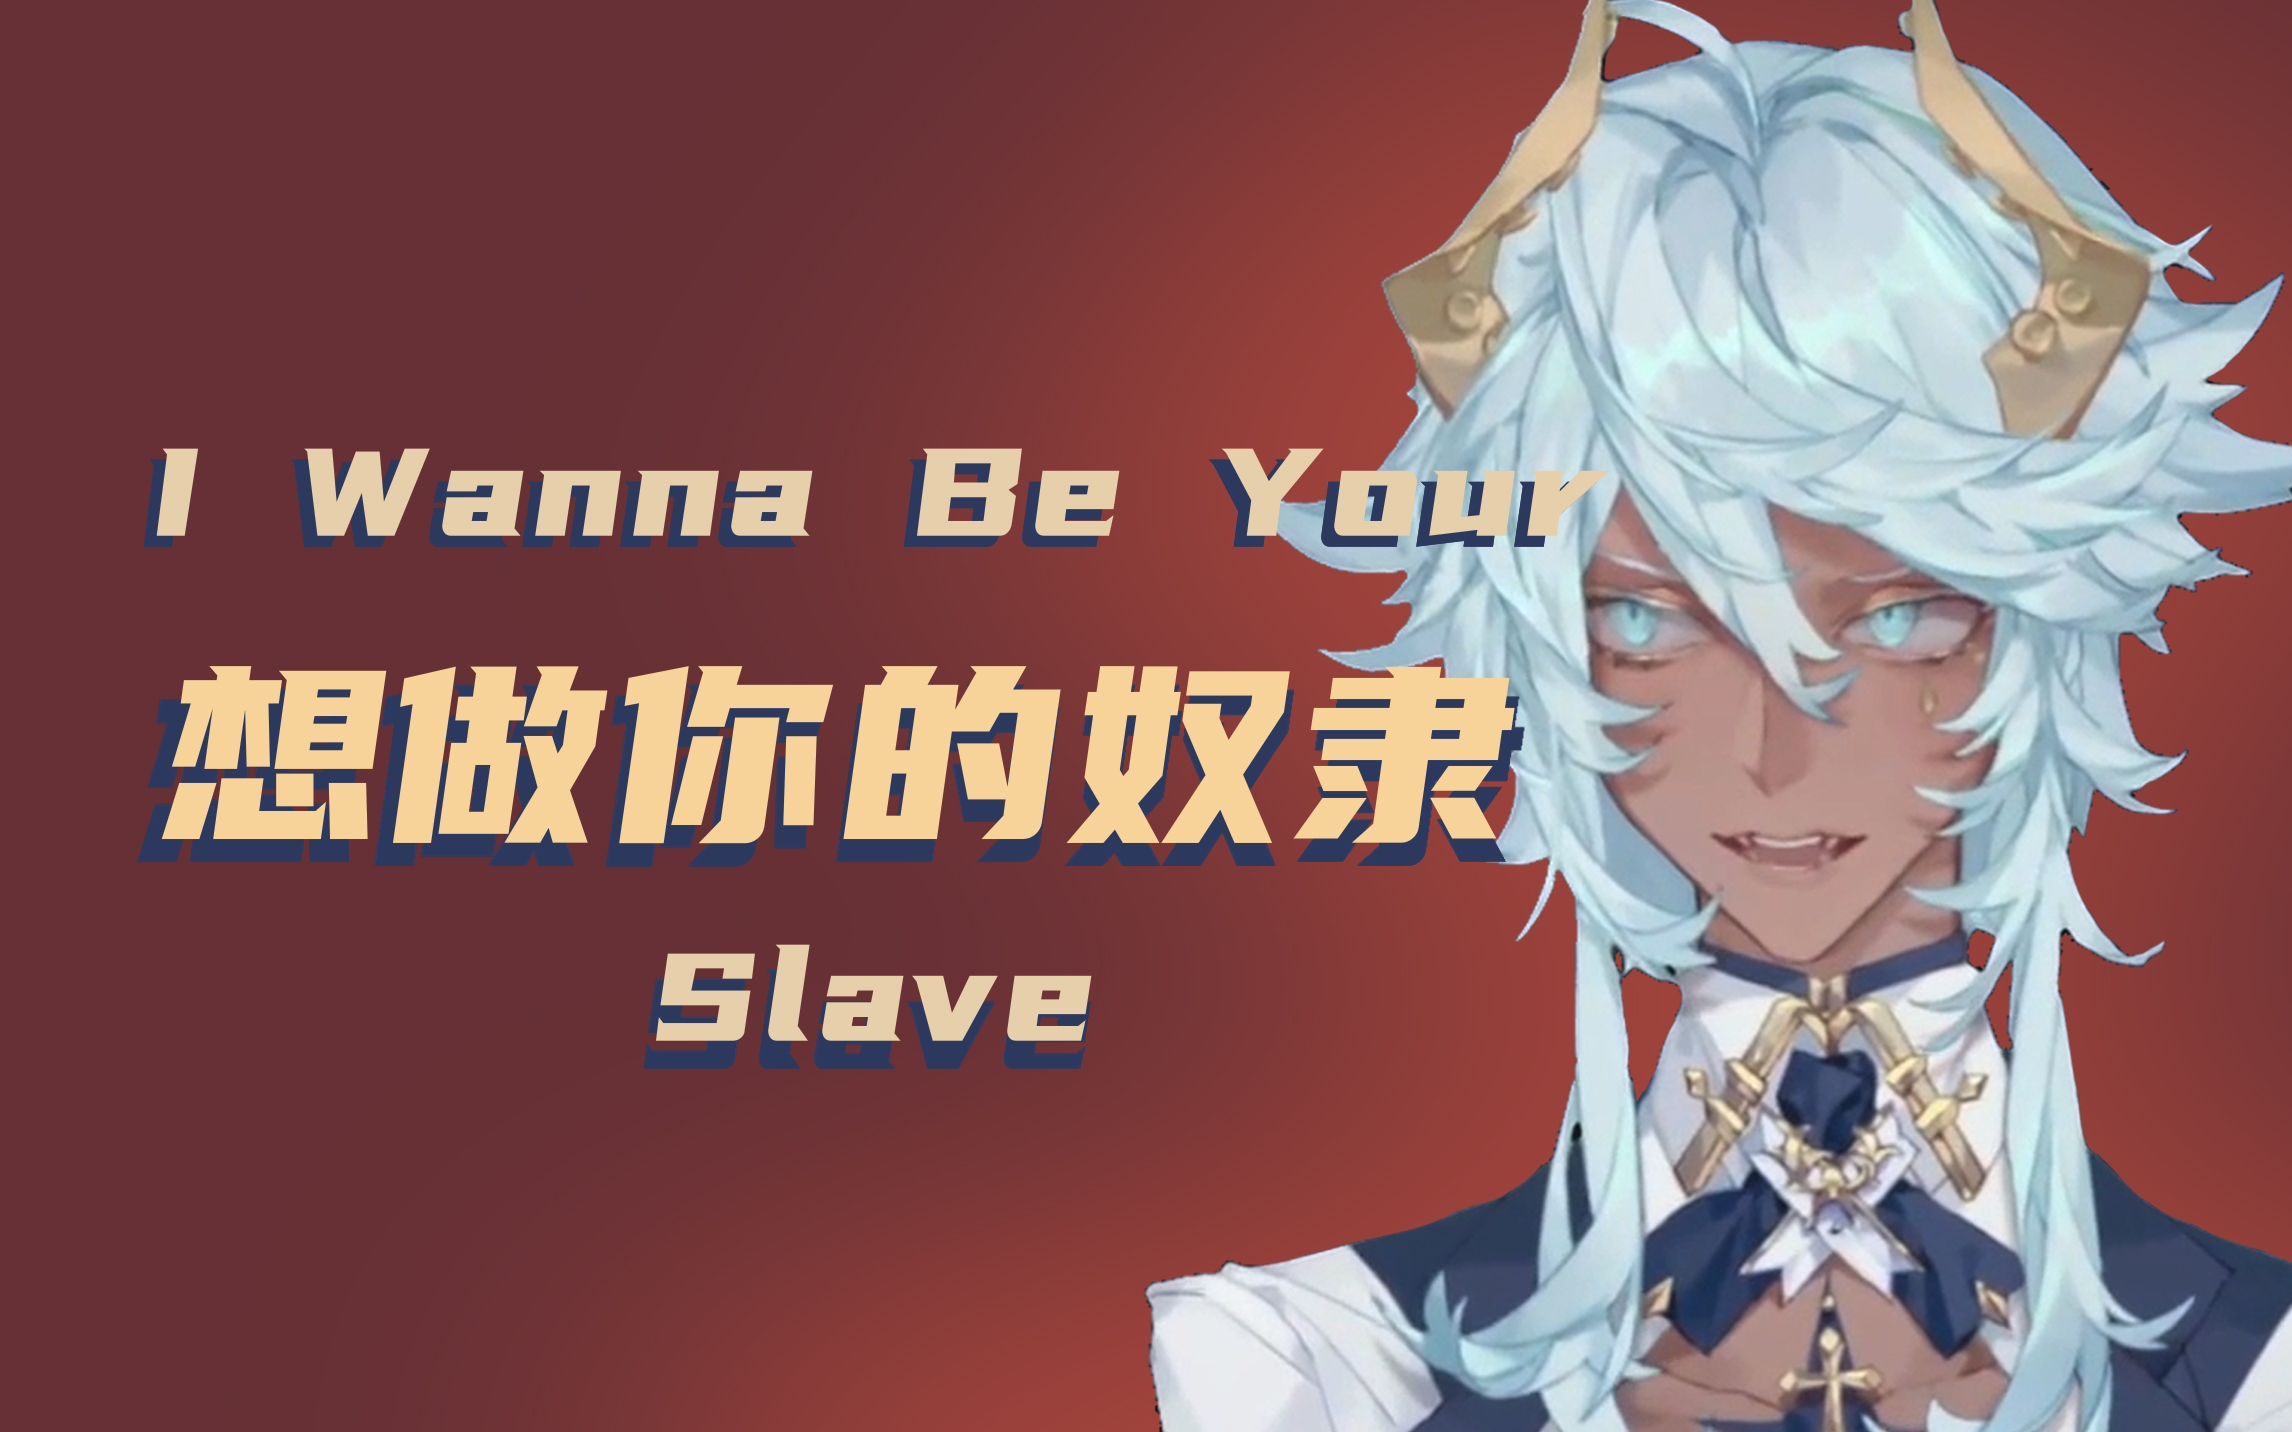 【塔克Tako】做你的奴隶和主人-I Wanna Be Your Slave-歌回切片